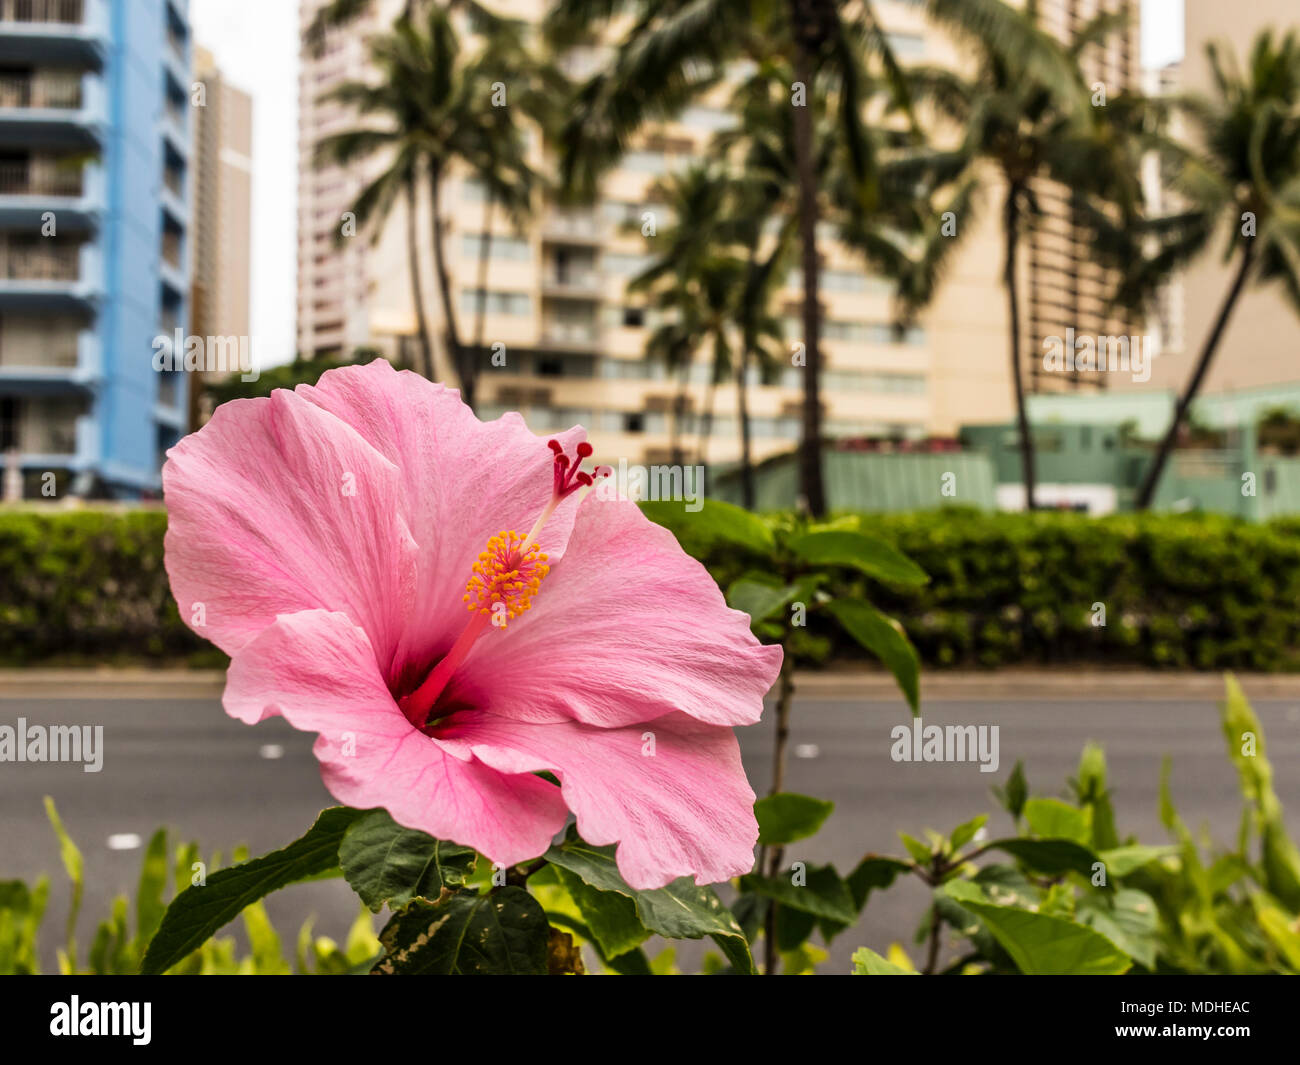 Hibiscus, la flor del estado de Hawaii, florece junto al bulevar Ala Mona, Waikiki, Honolulu, Oahu, Hawaii, Estados Unidos de América Foto de stock